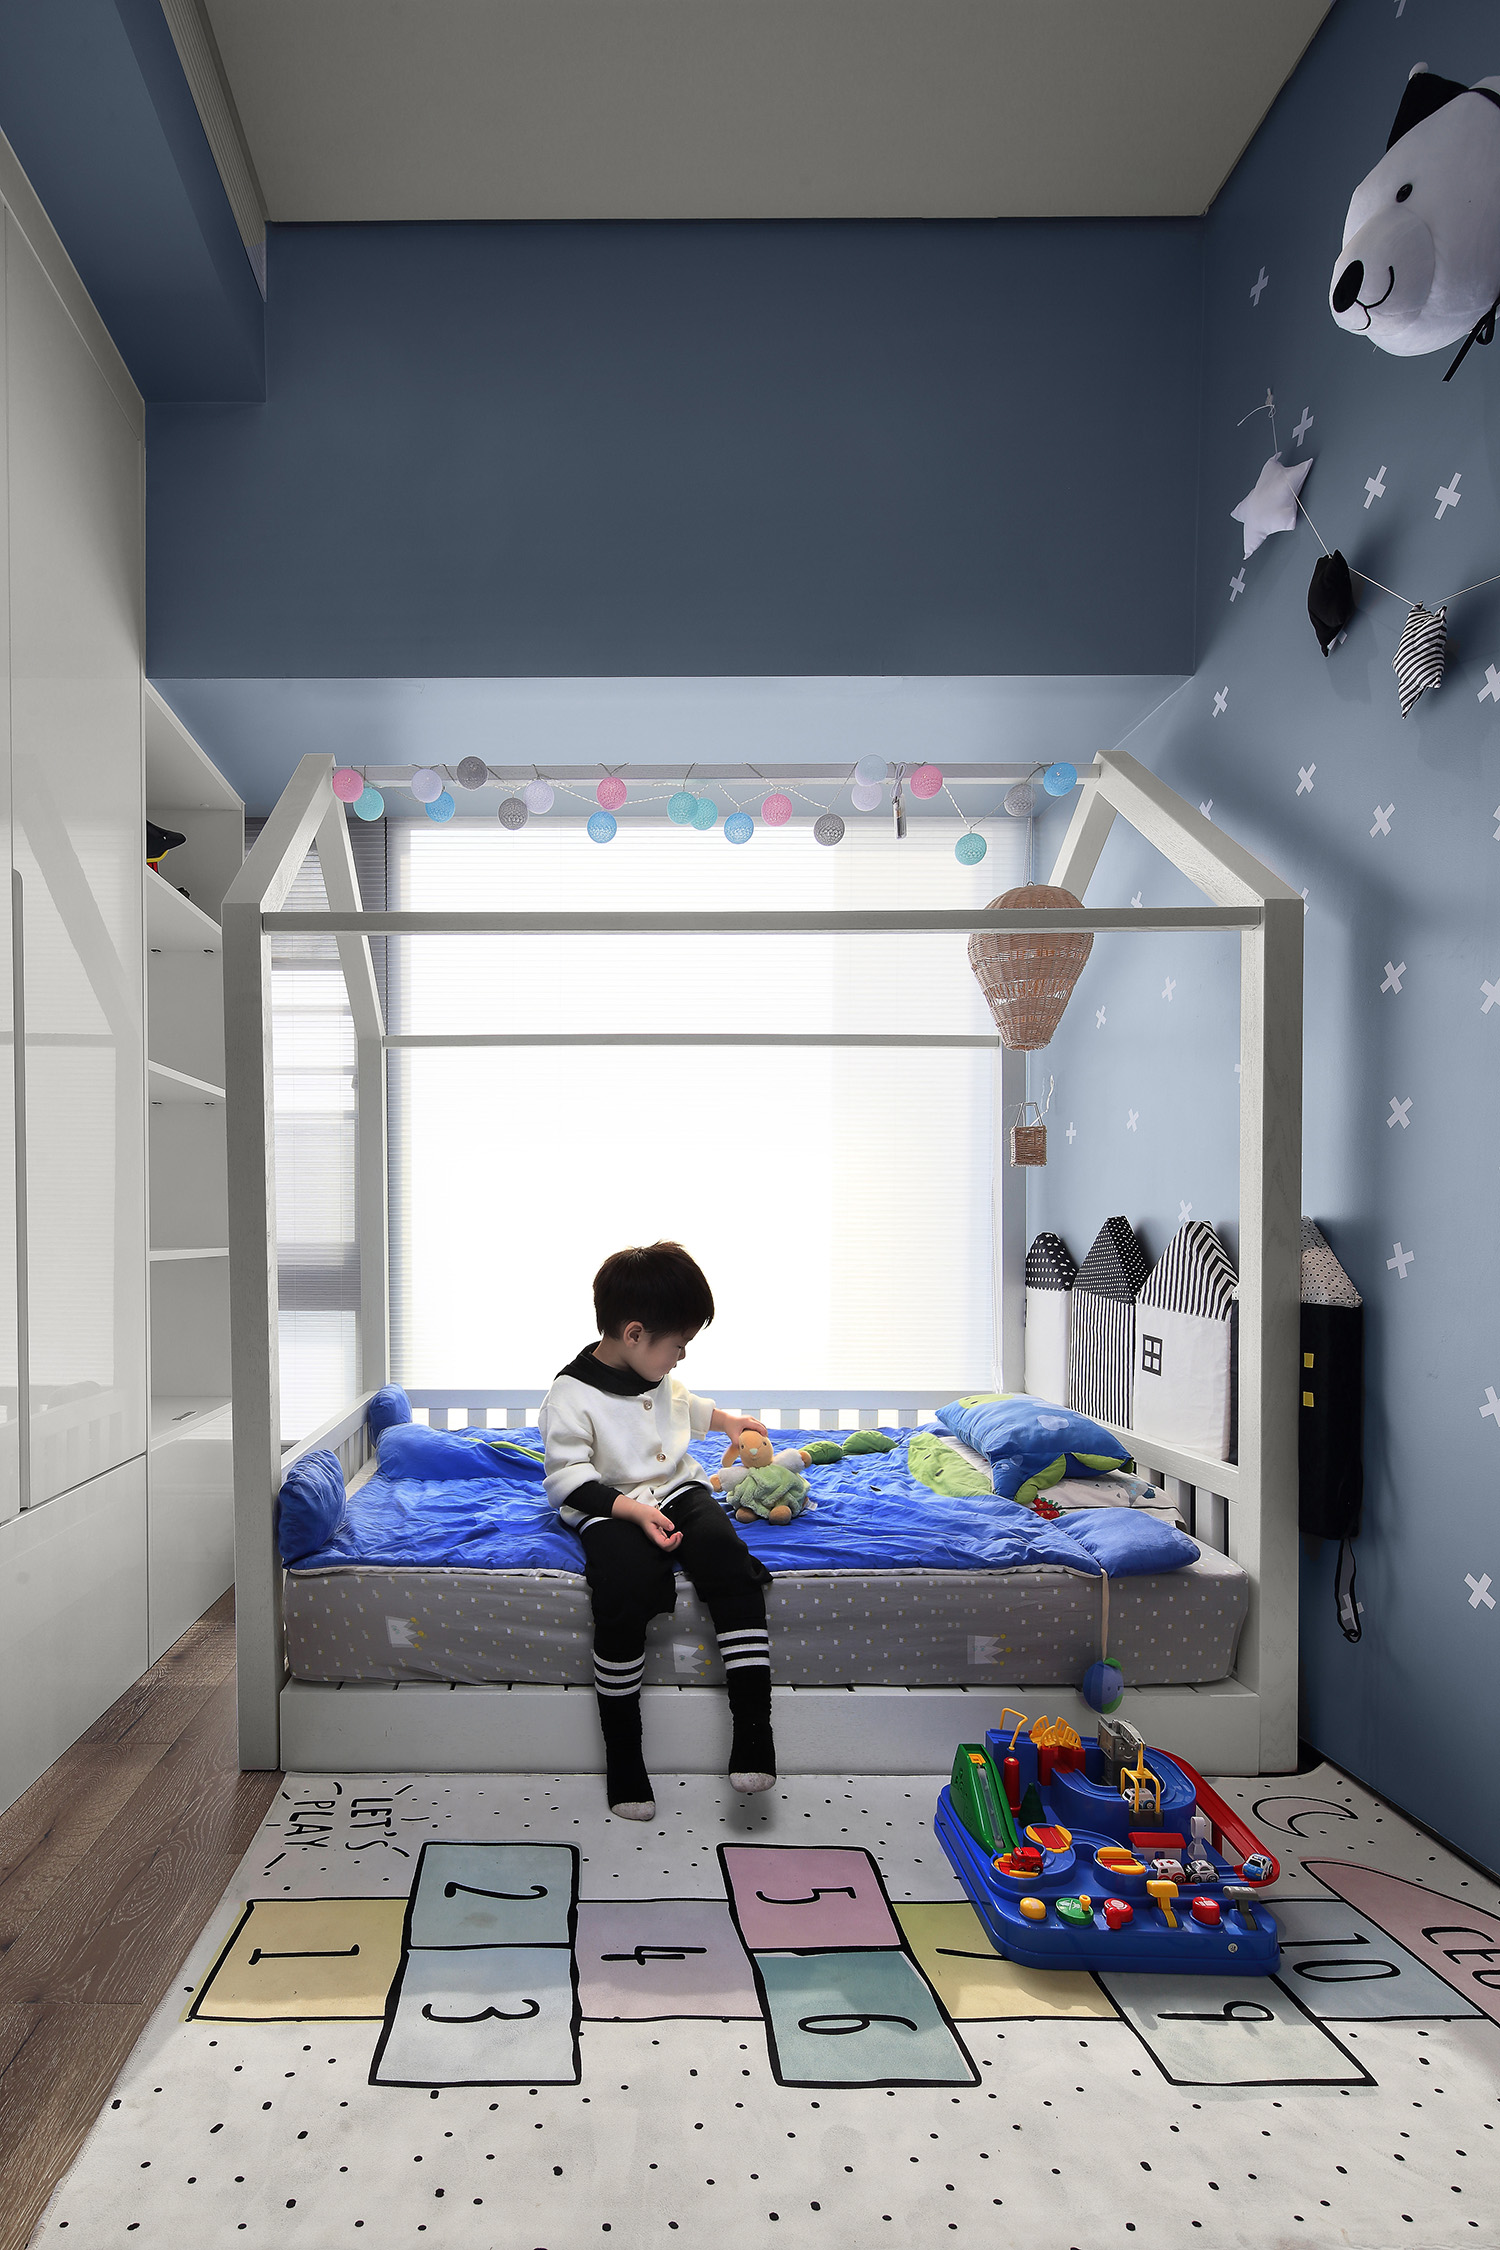 儿童房以蓝色为主，在灯光的运用与上彩取了以线带面的手法用来突出空间层次感。